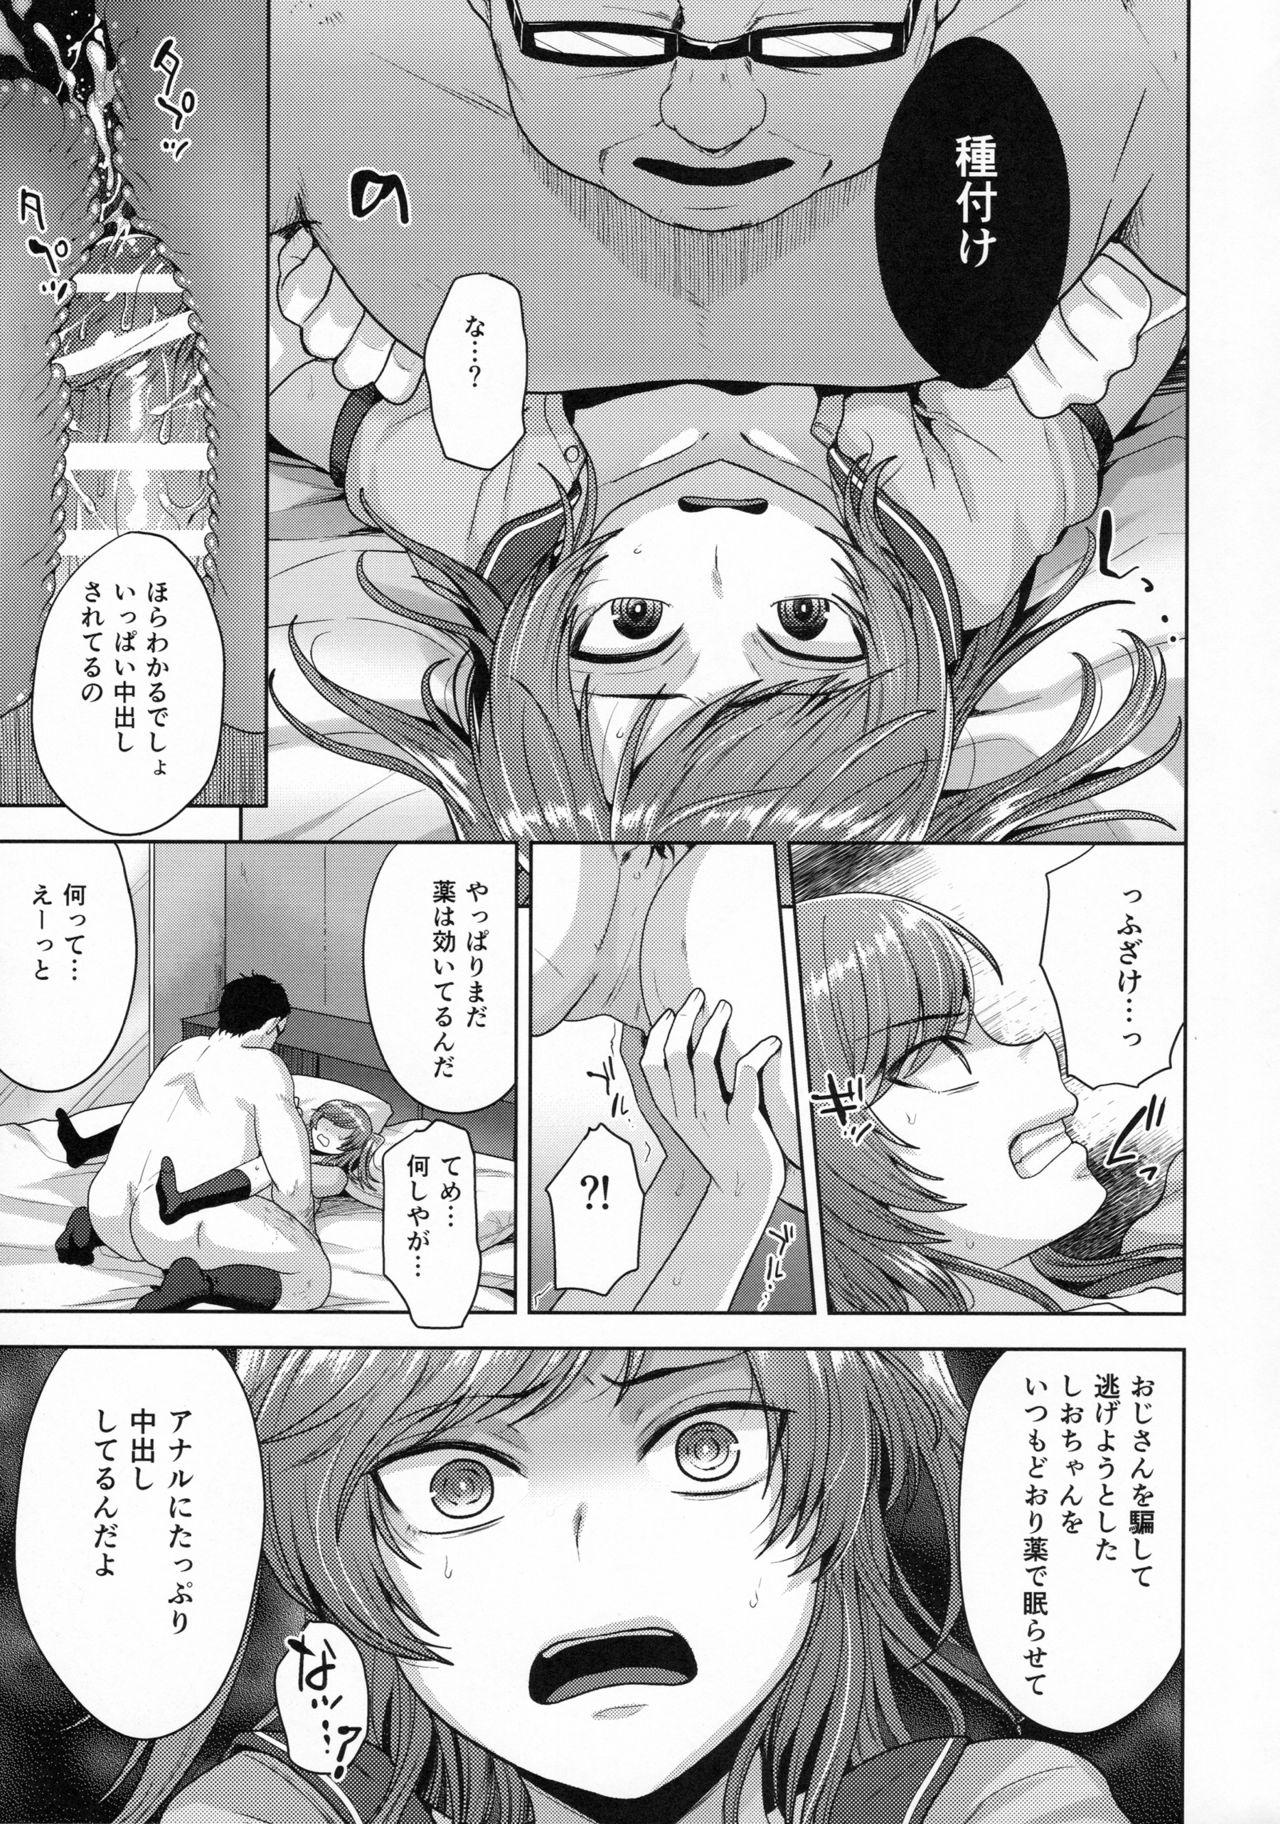 Pornstar Sayonara Itsumodoori Cute - Page 10